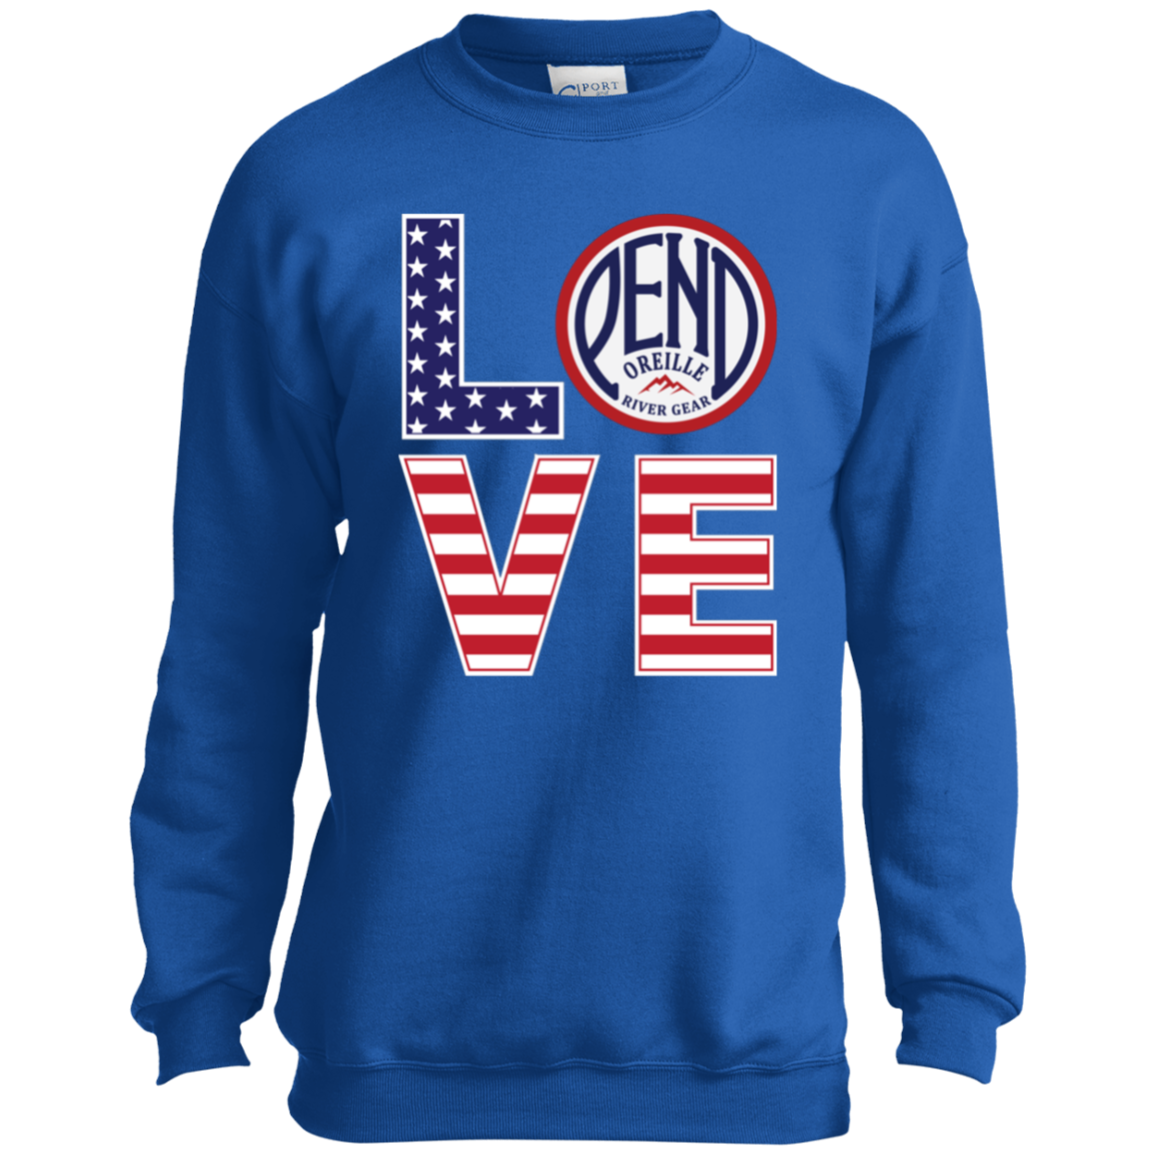 L.O.V.E. Pend Youth Sweatshirt